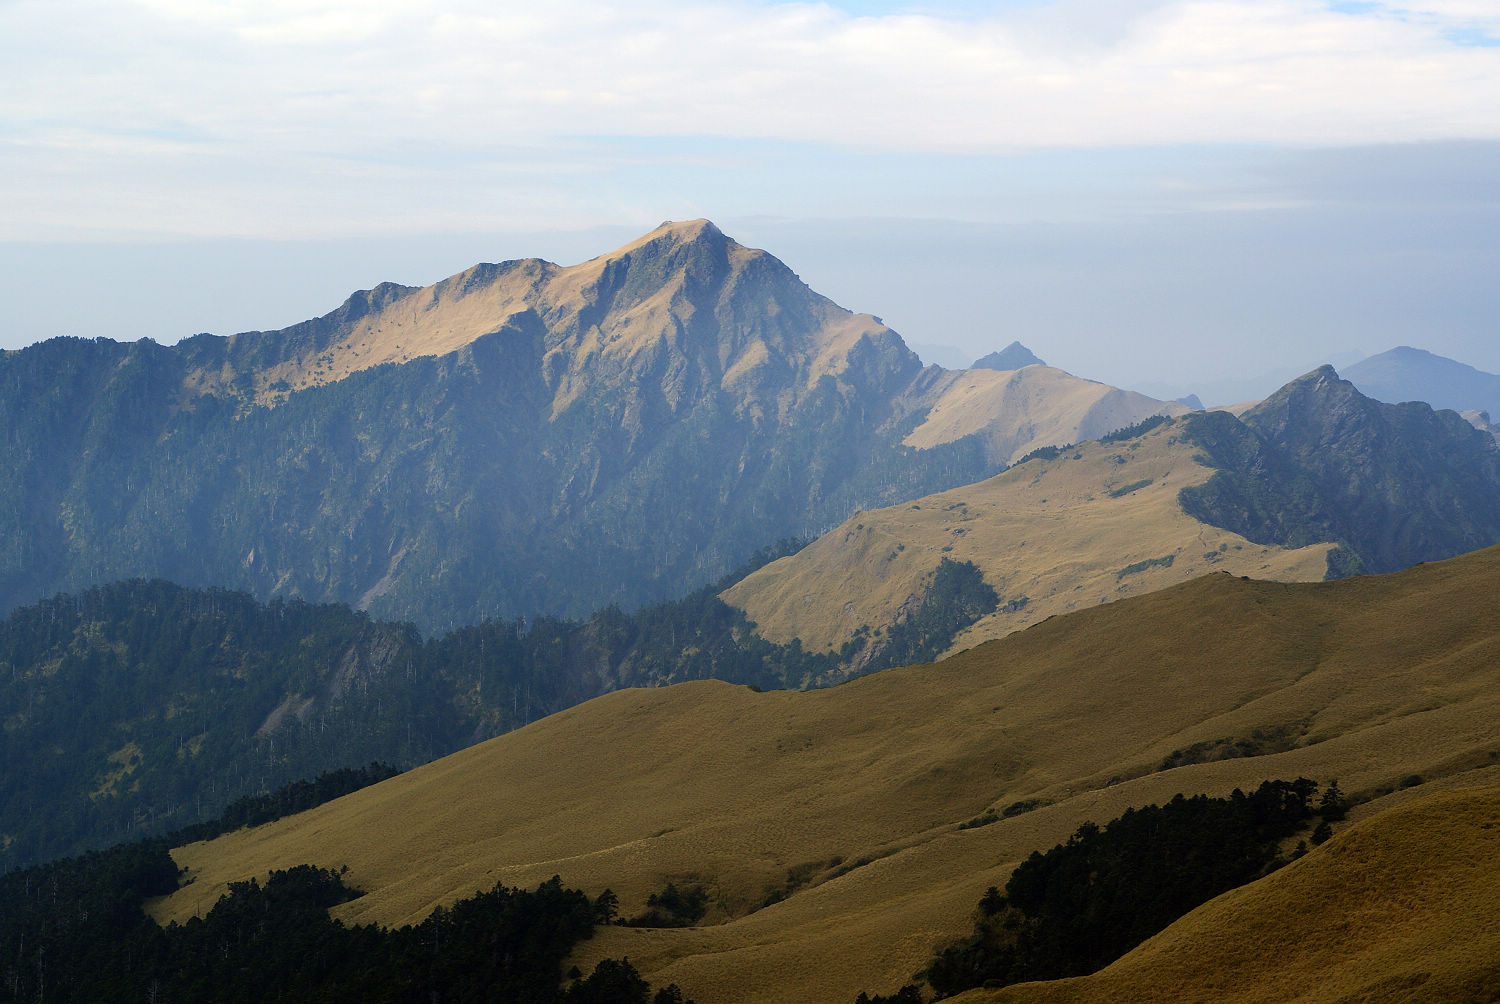 Hình ảnh của núi Kỳ Lai